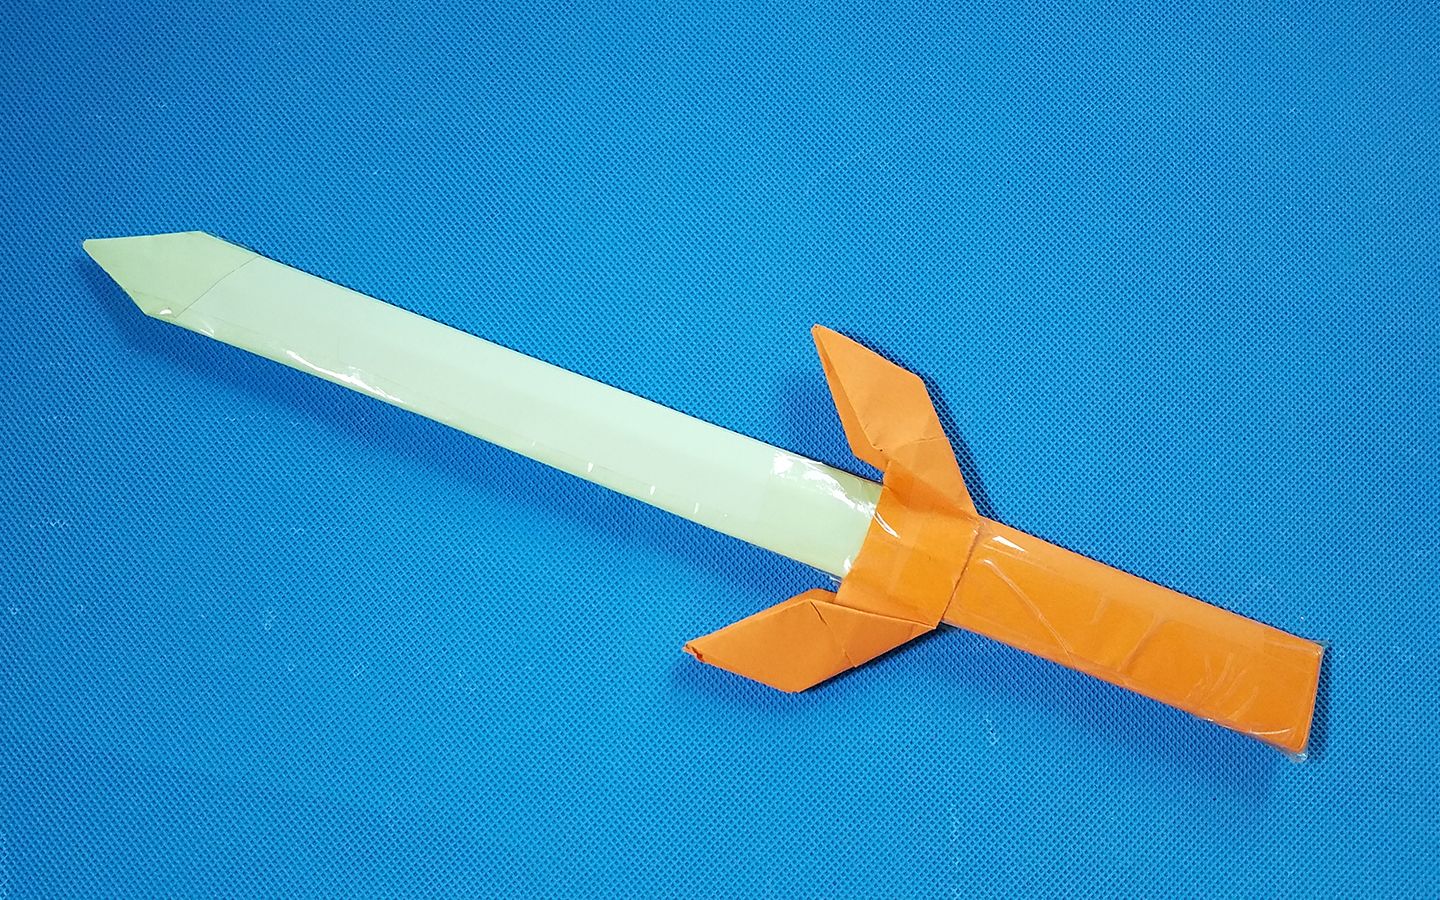 简易折纸忍者武器忍者爪忍者弓忍者刀-生活视频-搜狐视频